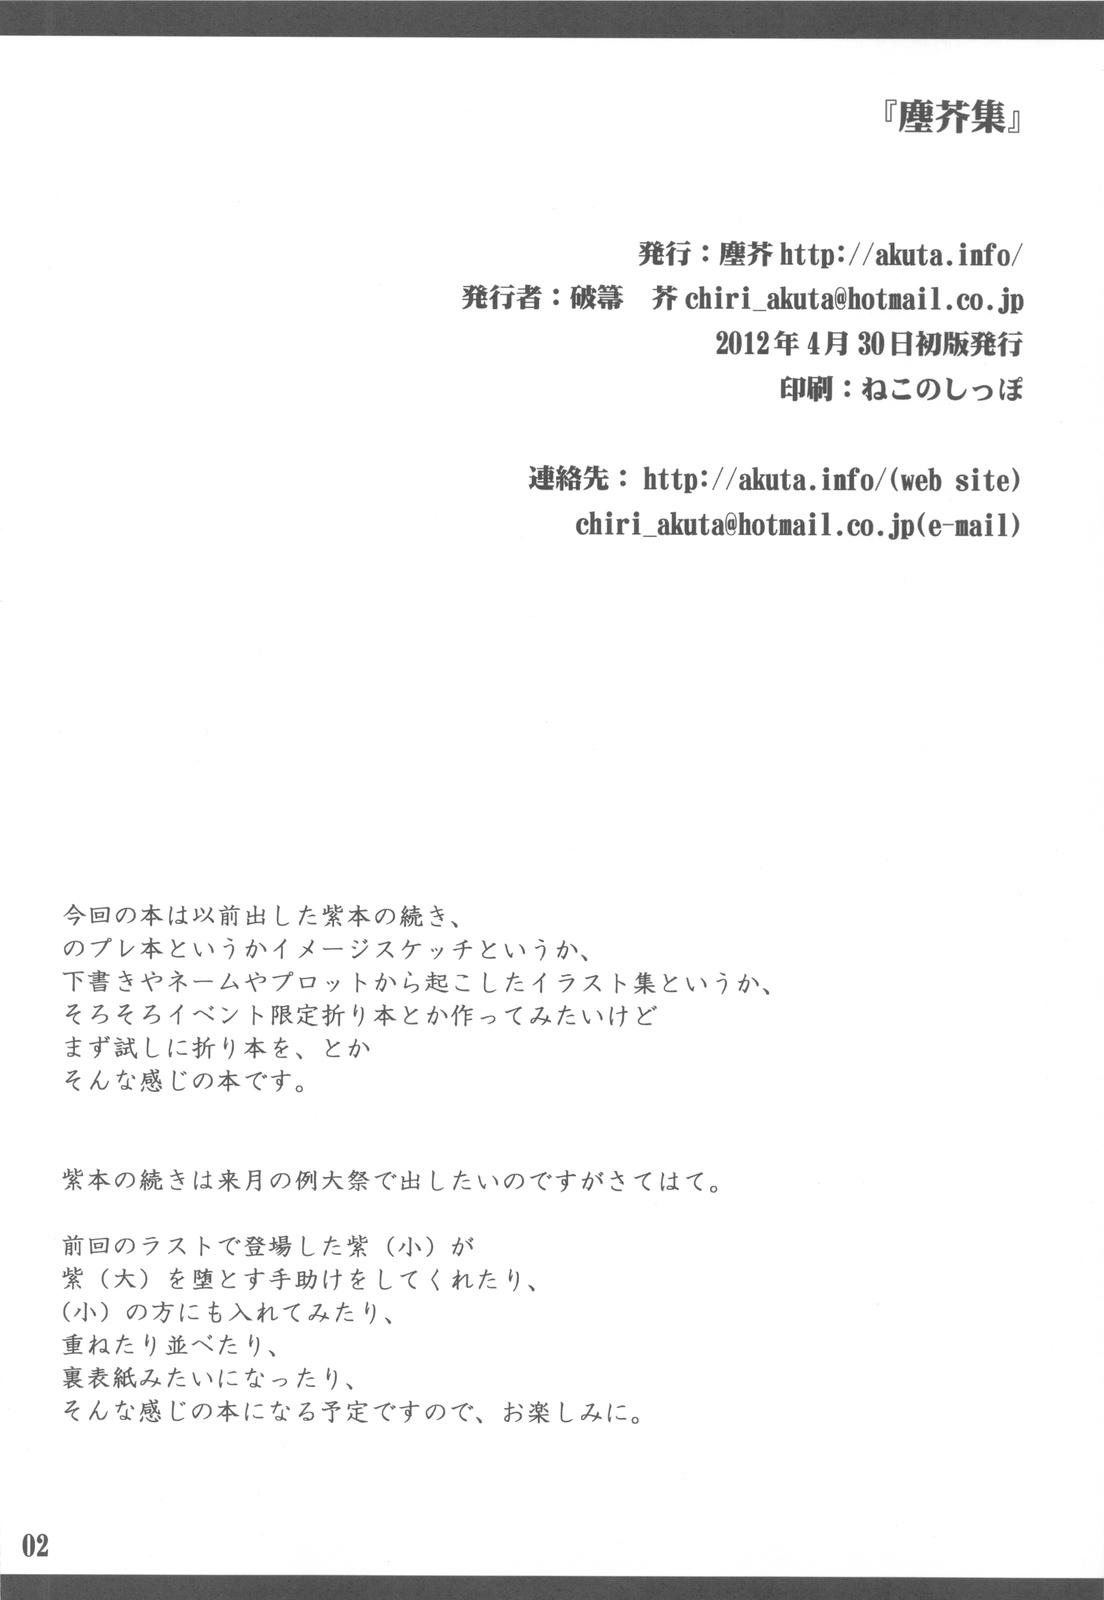 Punish Chiriakuta shuu - Touhou project Amateur Sex - Page 2